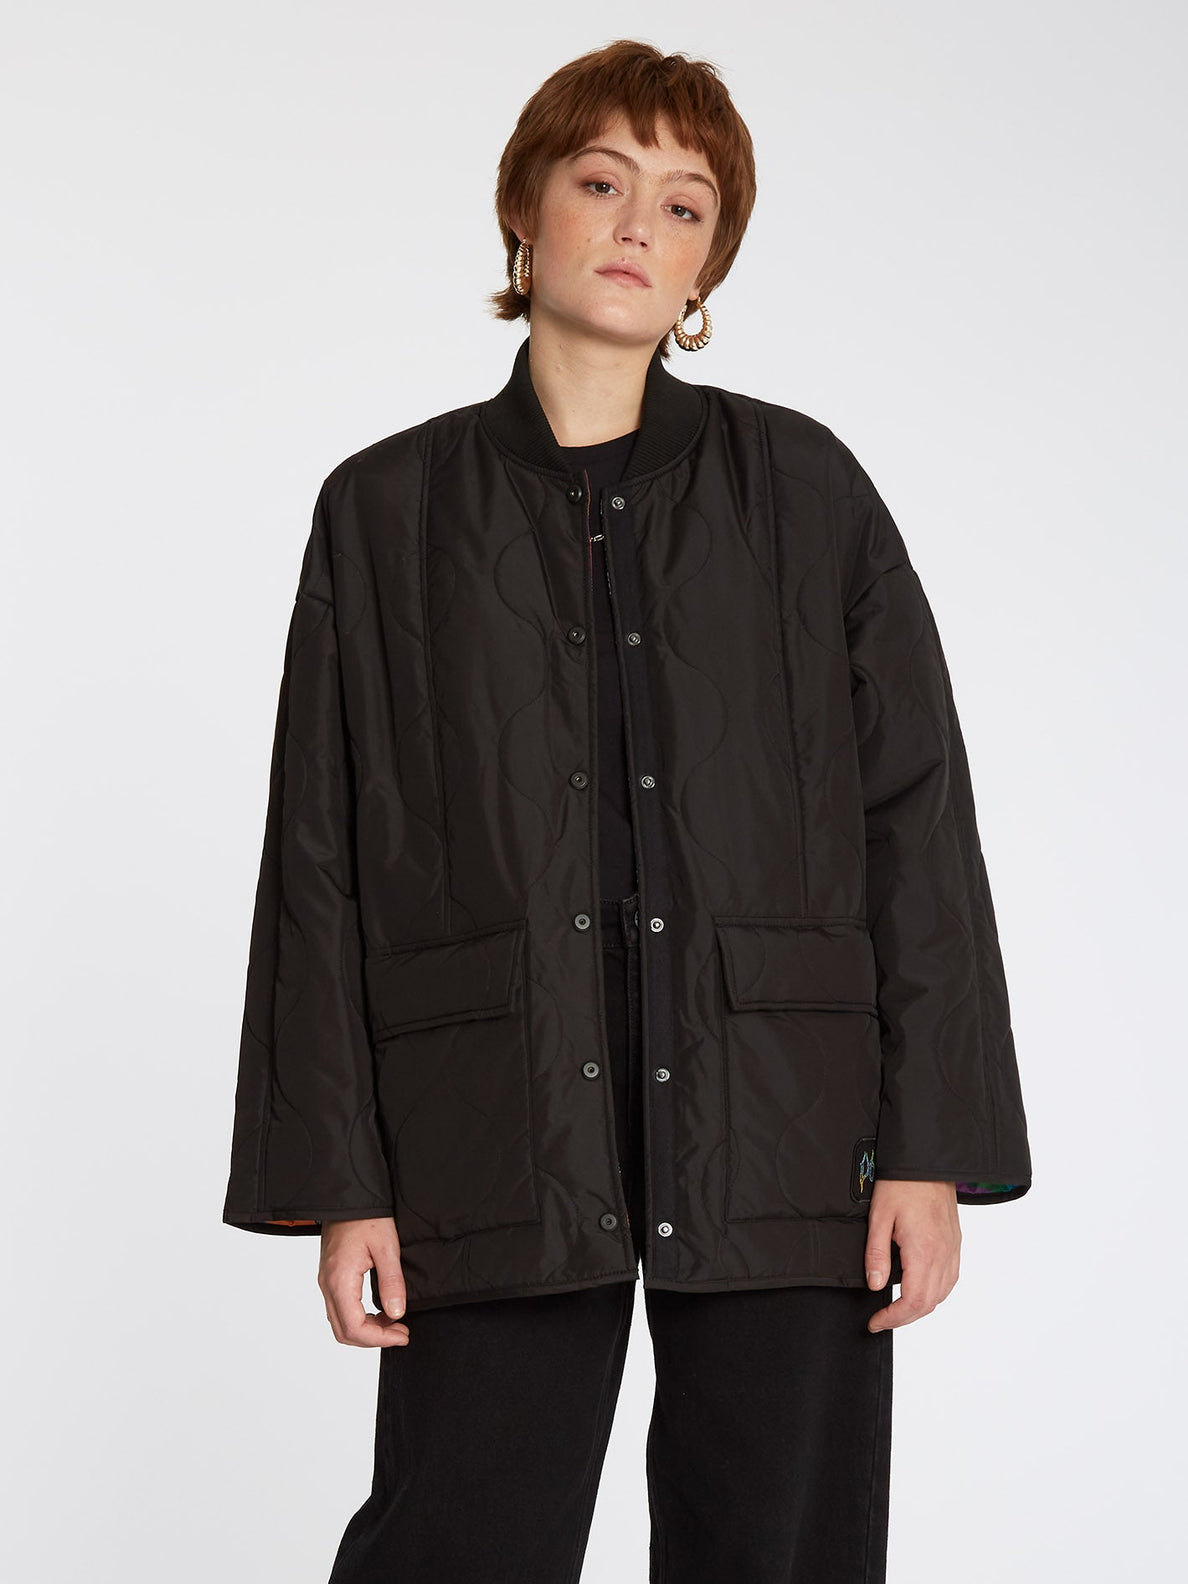 Chrissie Abbott X French Jacket (Reversible) - BLACK (B1732204_BLK) [1]